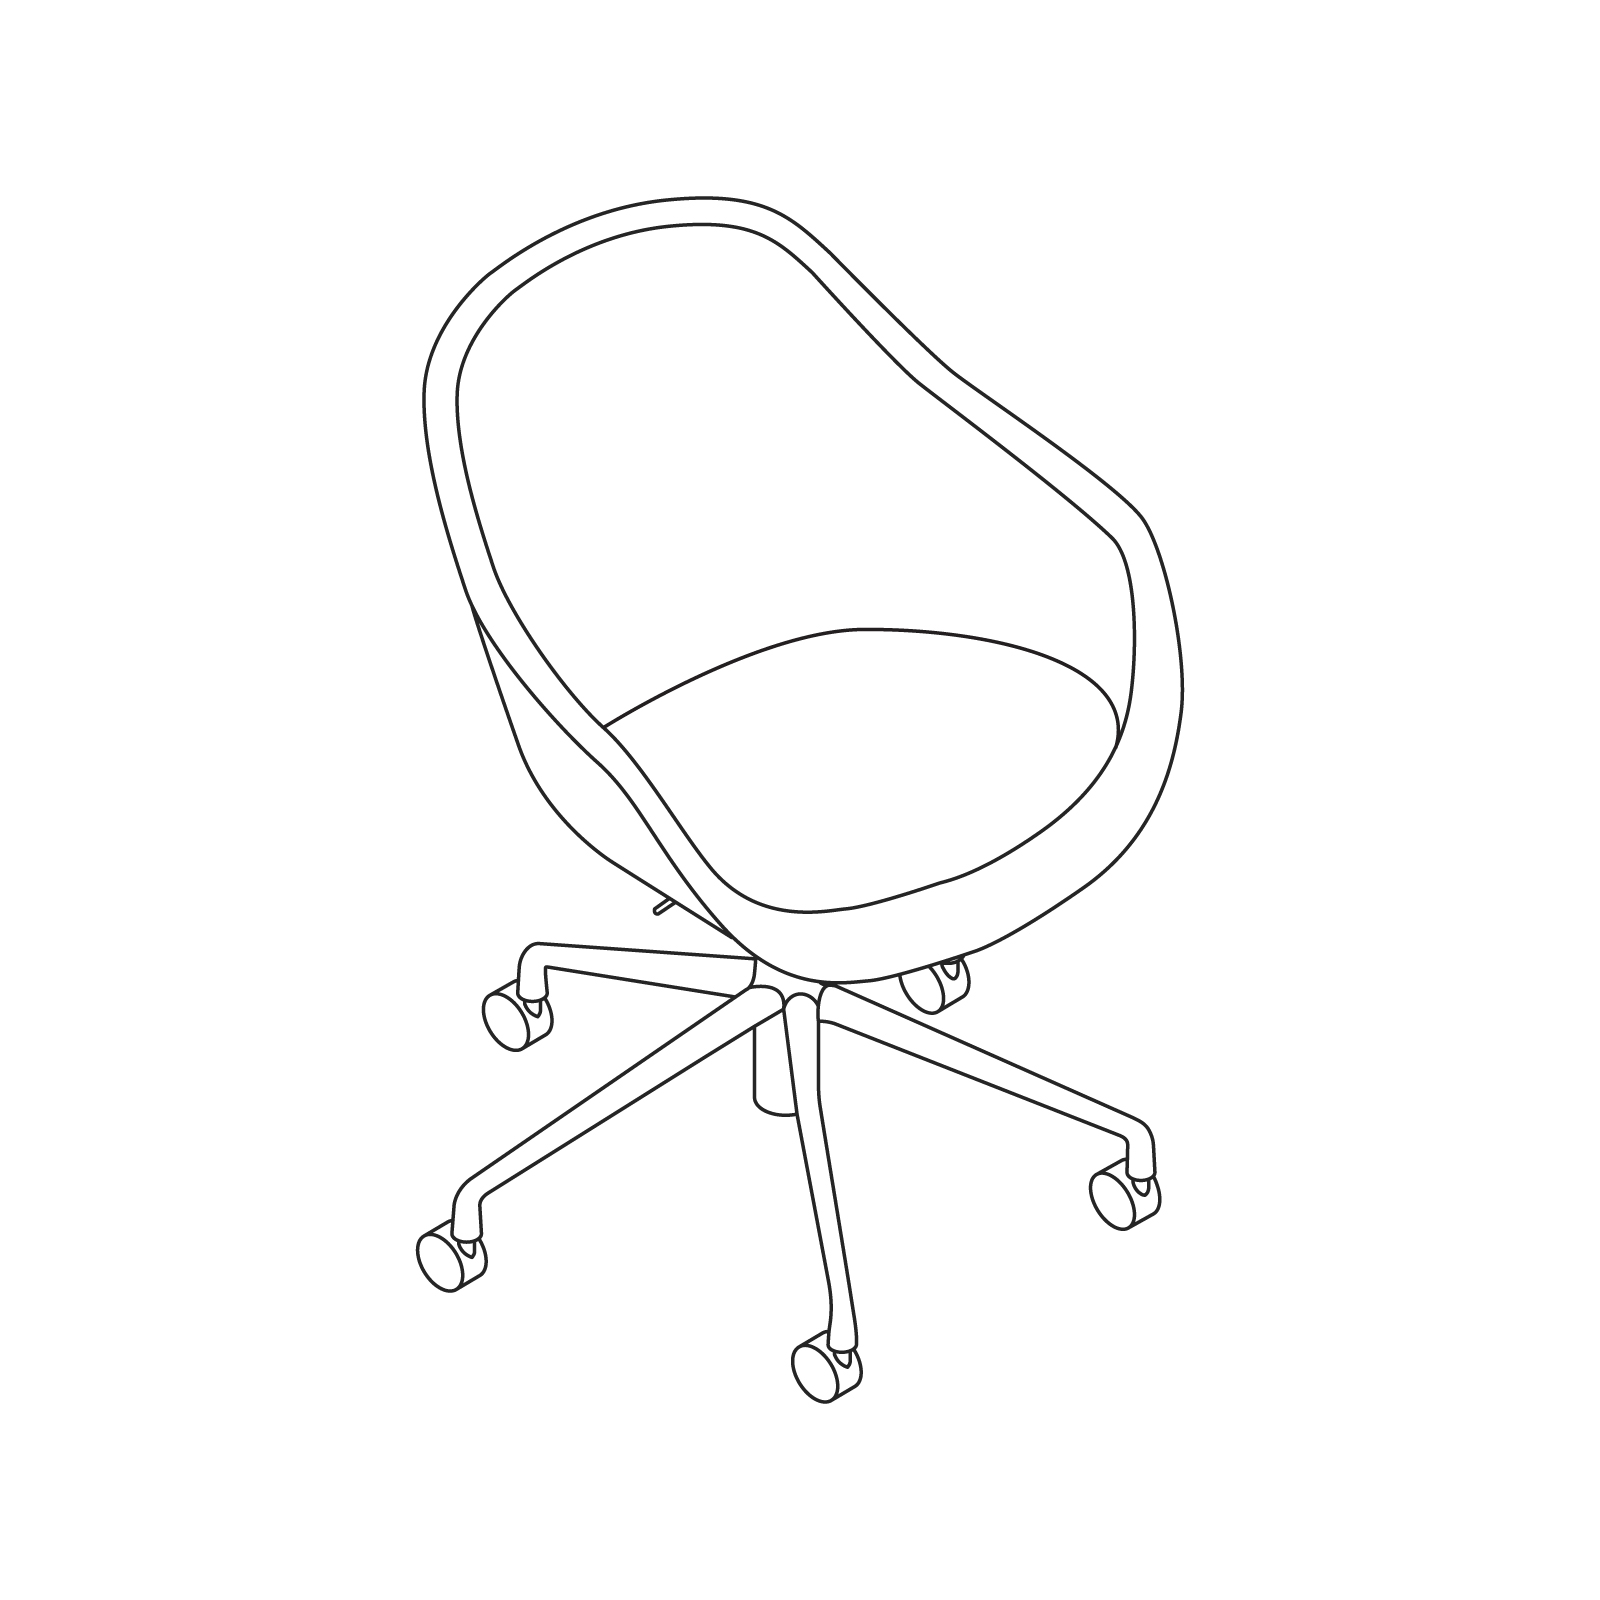 Anaconda Visitor Chair - petite chaise - hauteur d'assise : 29 – 38 cm